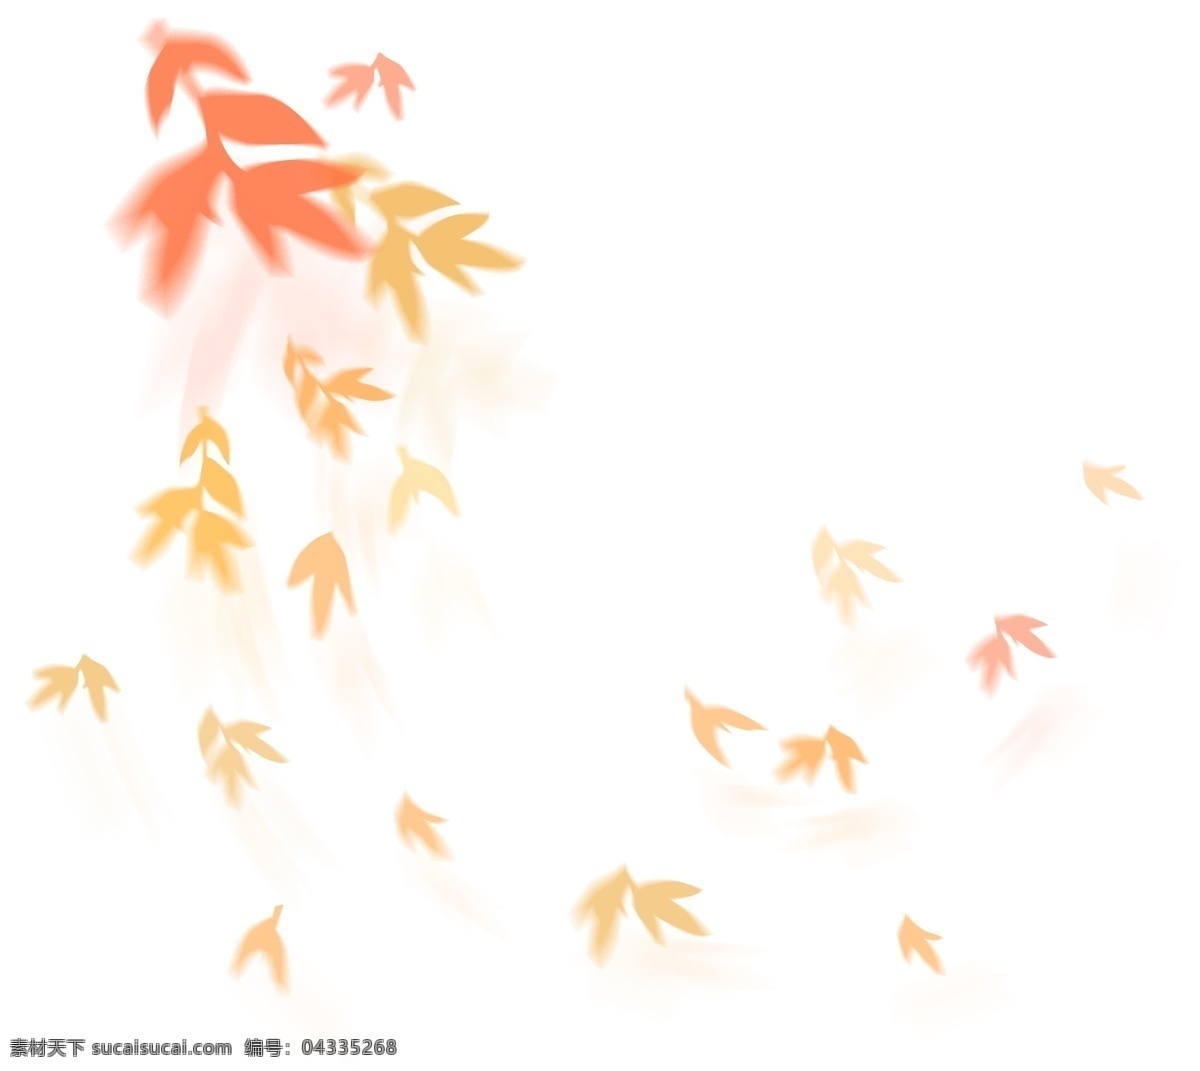 漂浮 元素 橘 色 树叶 枫叶 商用 矢量 矢量素材 唯美 秋天 漂浮元素 橘色 飘落 风 意境 红叶 深秋 凋零 动态 投影